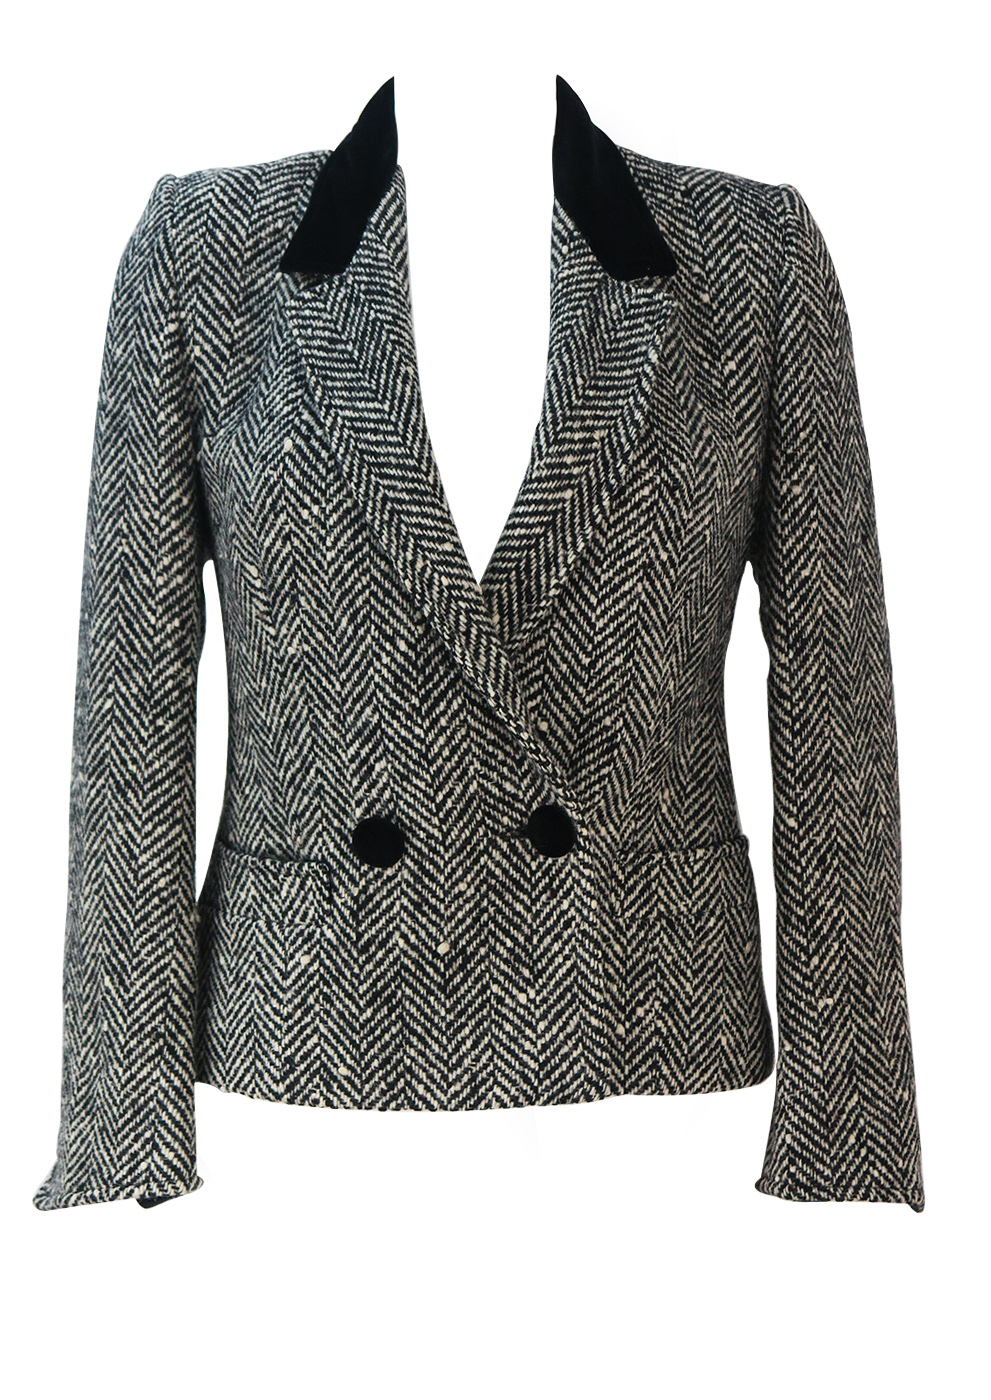 Black & White Herringbone Tweed Fitted Jacket with Black Velvet Collar ...